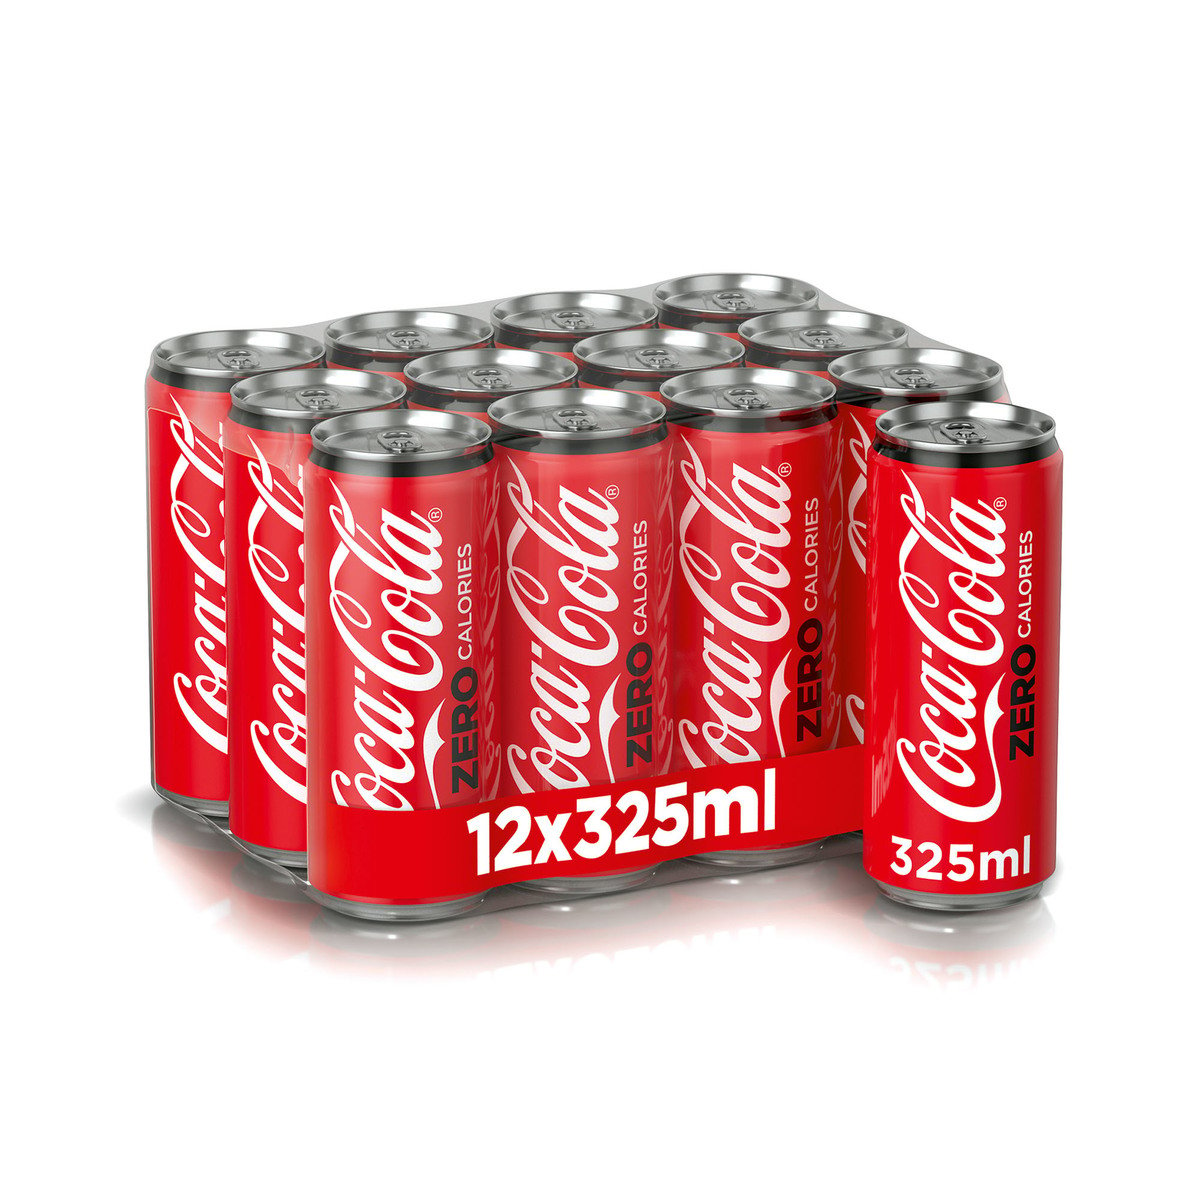 COKE ZERO CAN 325ML  All Day Supermarket